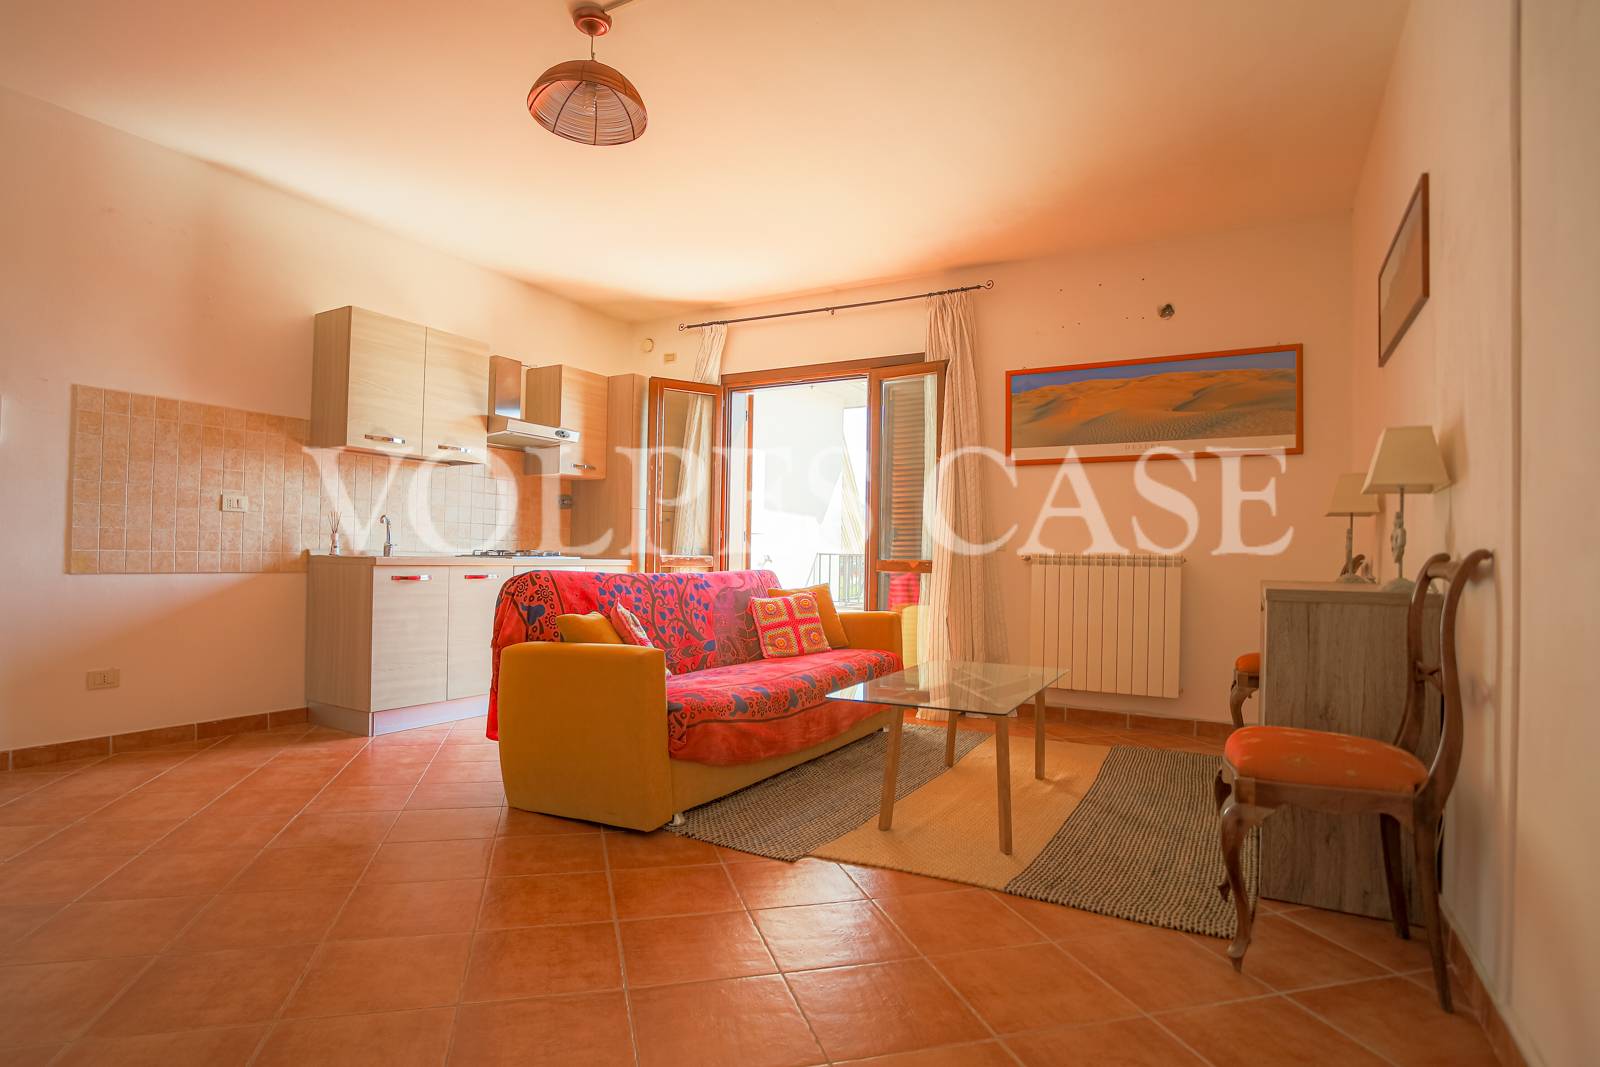 Appartamento in vendita a Riano, 3 locali, prezzo € 140.000 | CambioCasa.it